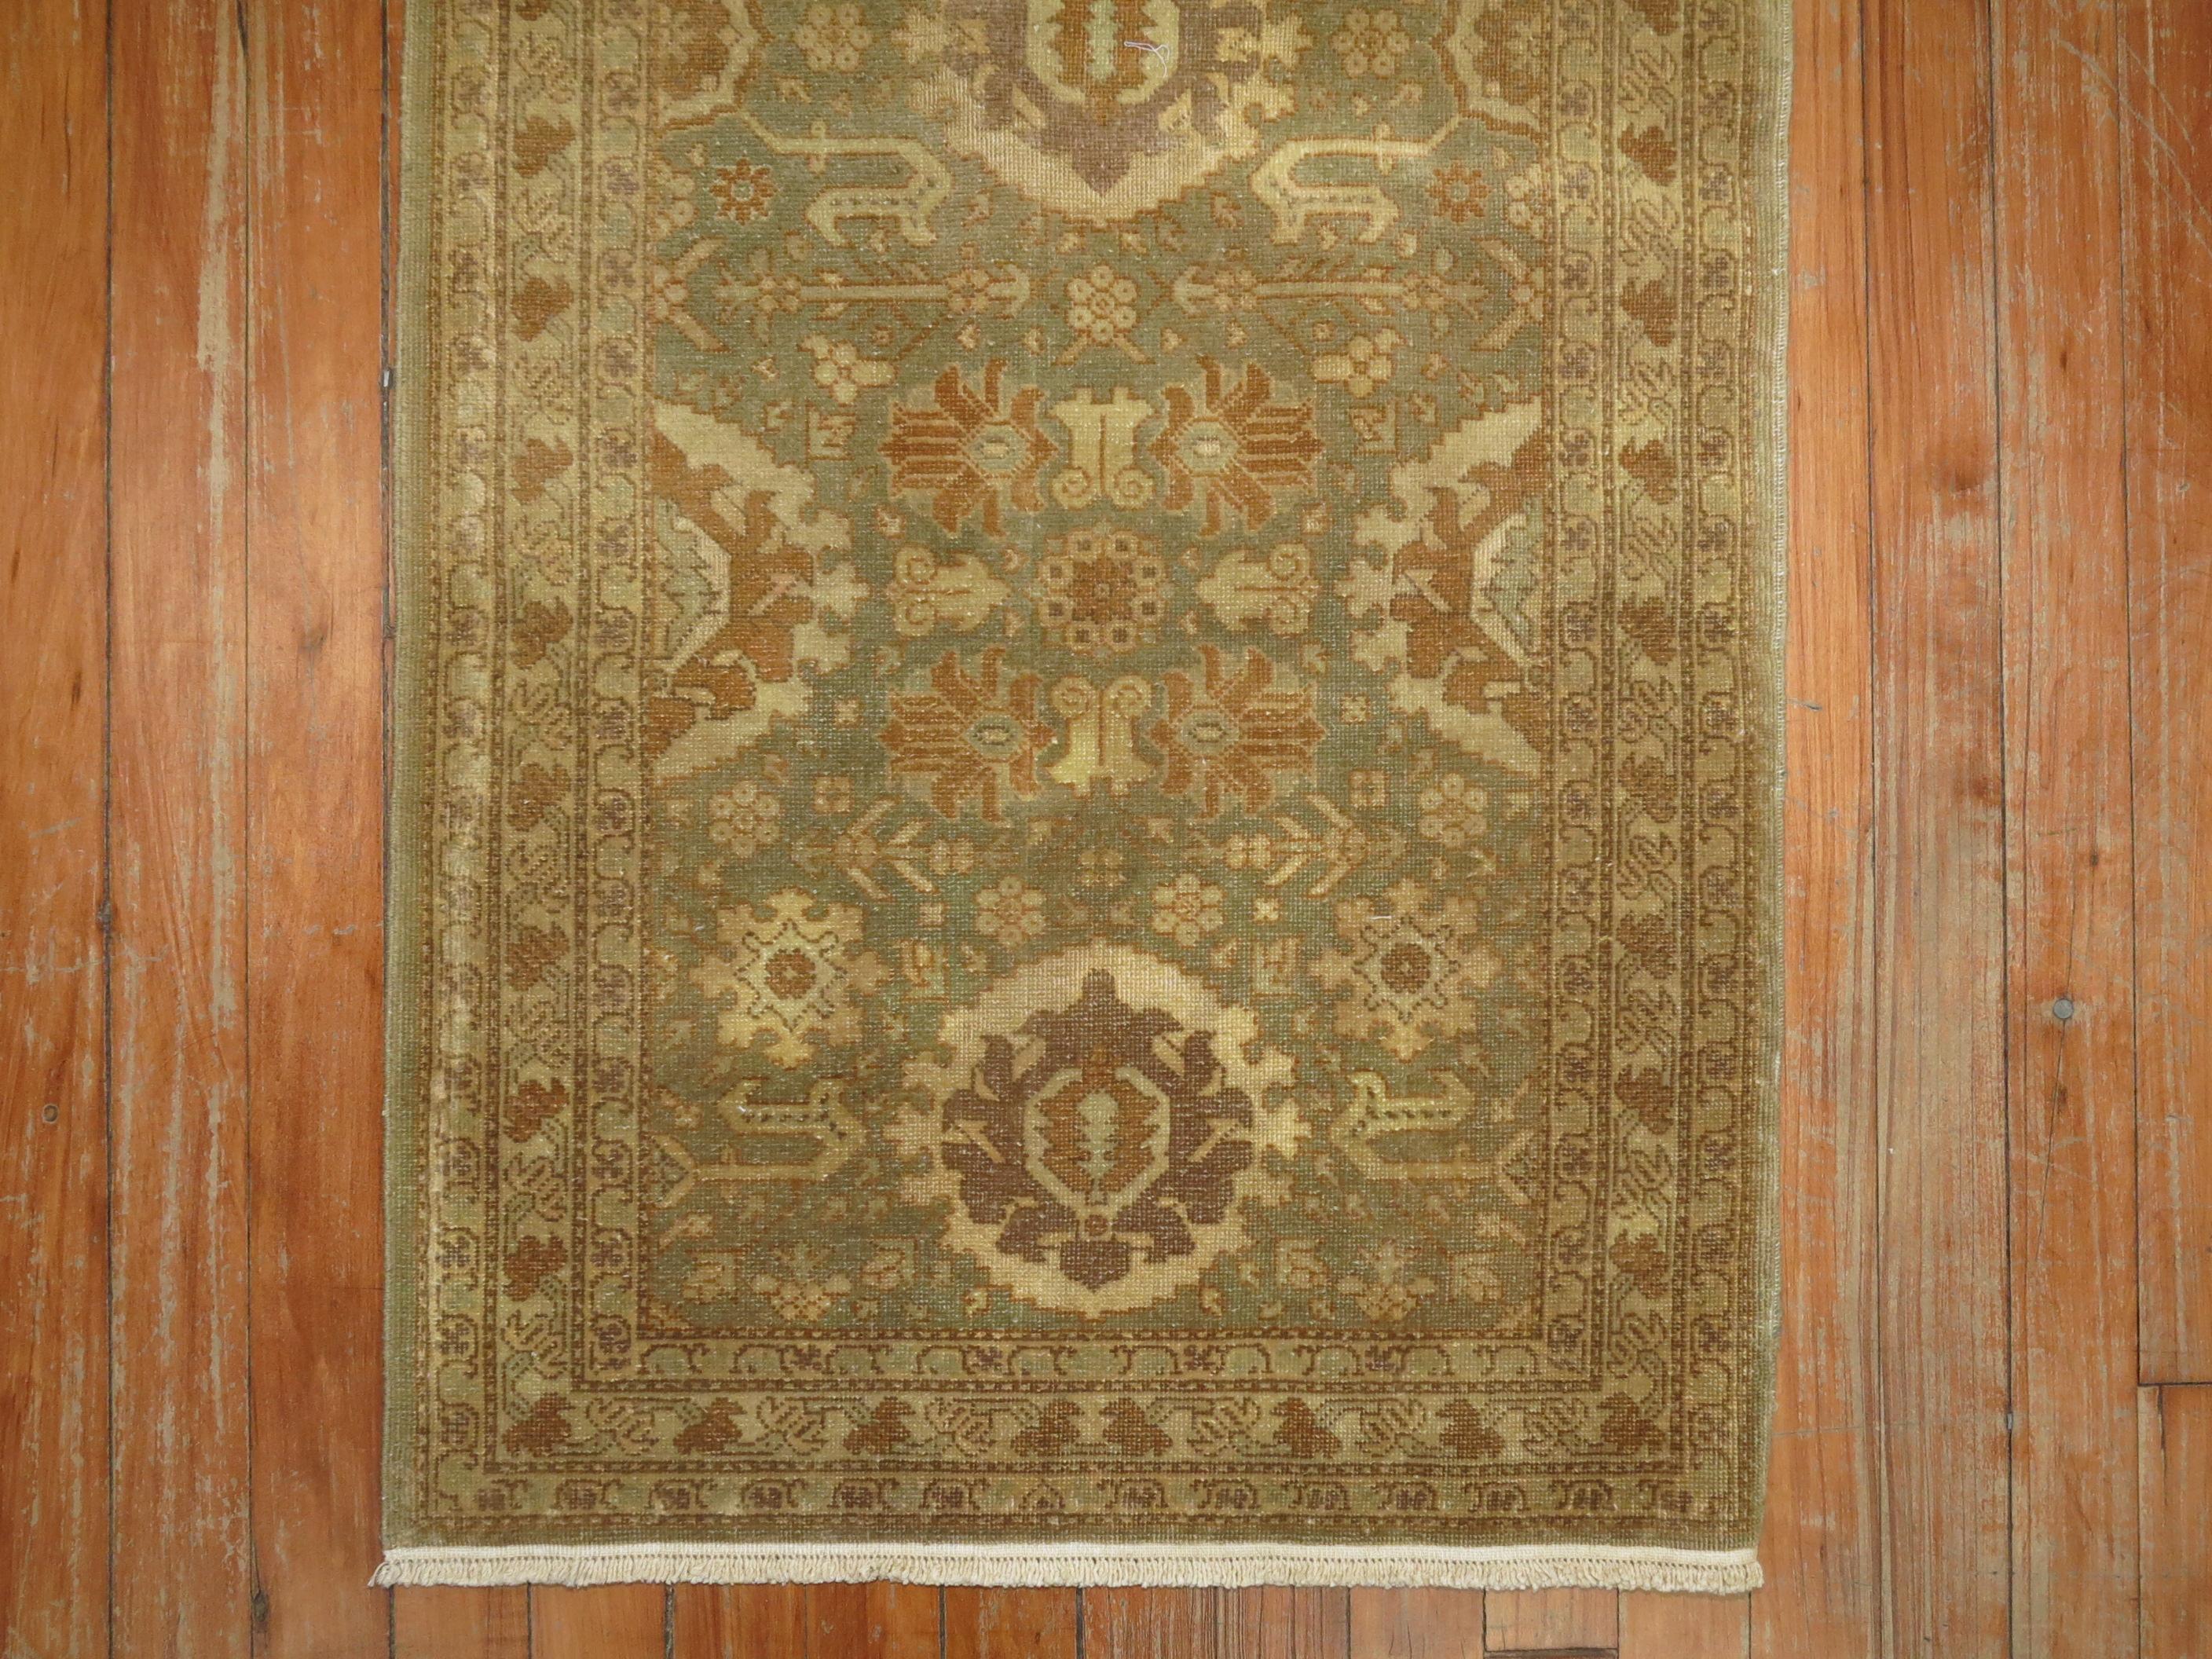 Seltener kleiner persischer Täbriz-Teppich in Grün-, Braun- und Goldtönen aus der Mitte des 20. Jahrhunderts.

Maße: 2' x 4'3''.